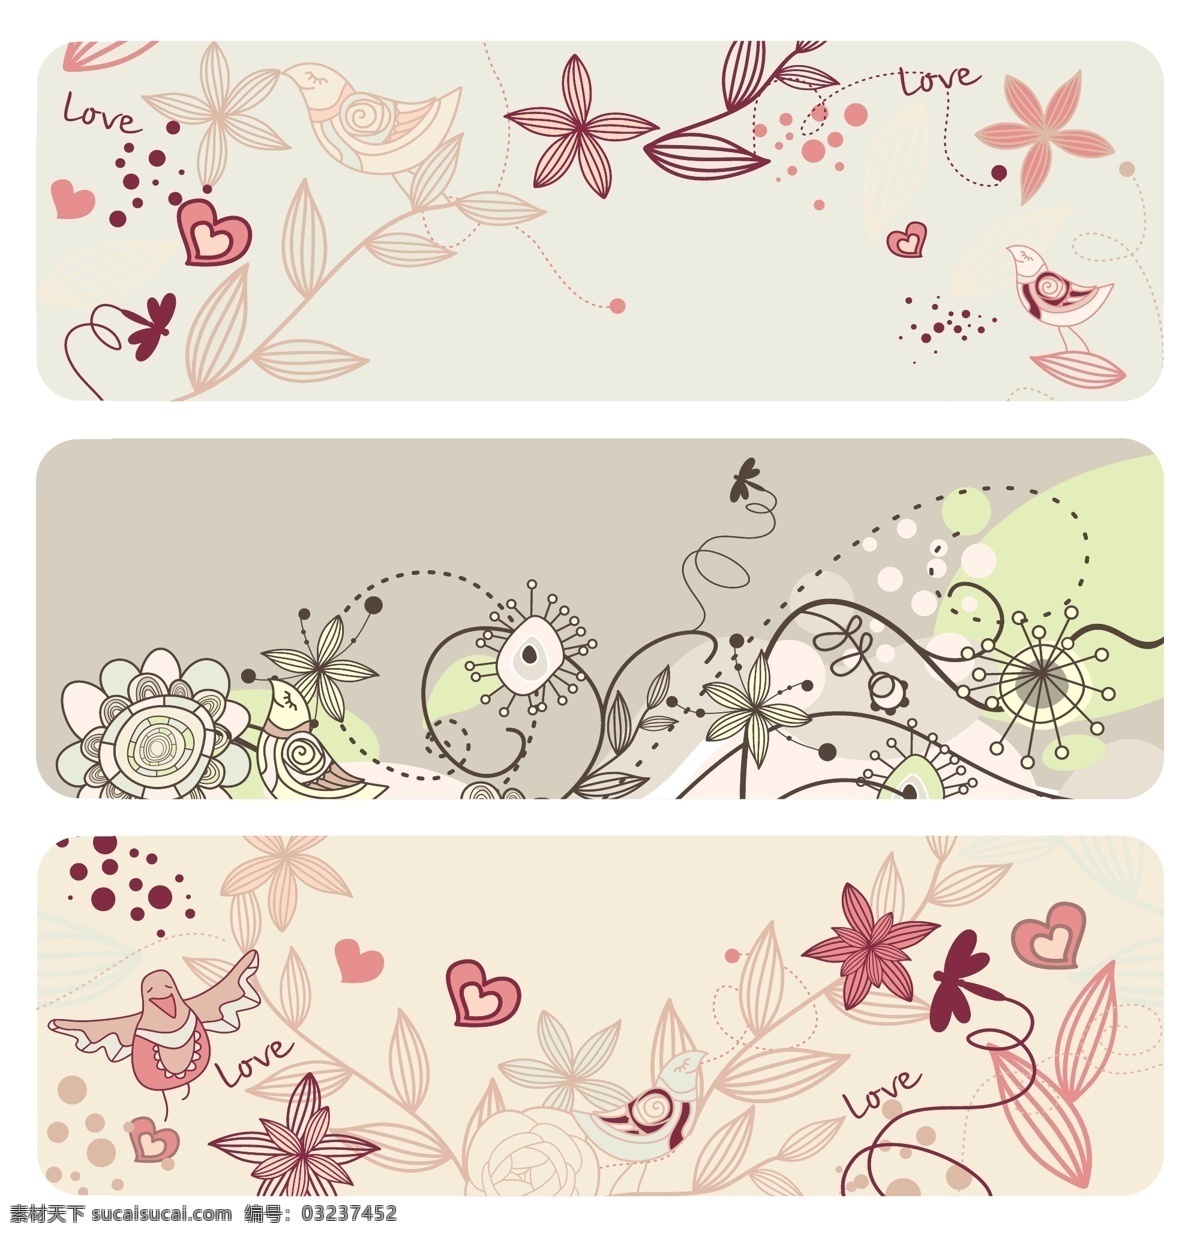 2只叶玫瑰 时尚 可爱 小鸟 花朵 矢量 插图 横幅 花 玫瑰 鸟 矢量素材 叶 自然 矢量图 日常生活